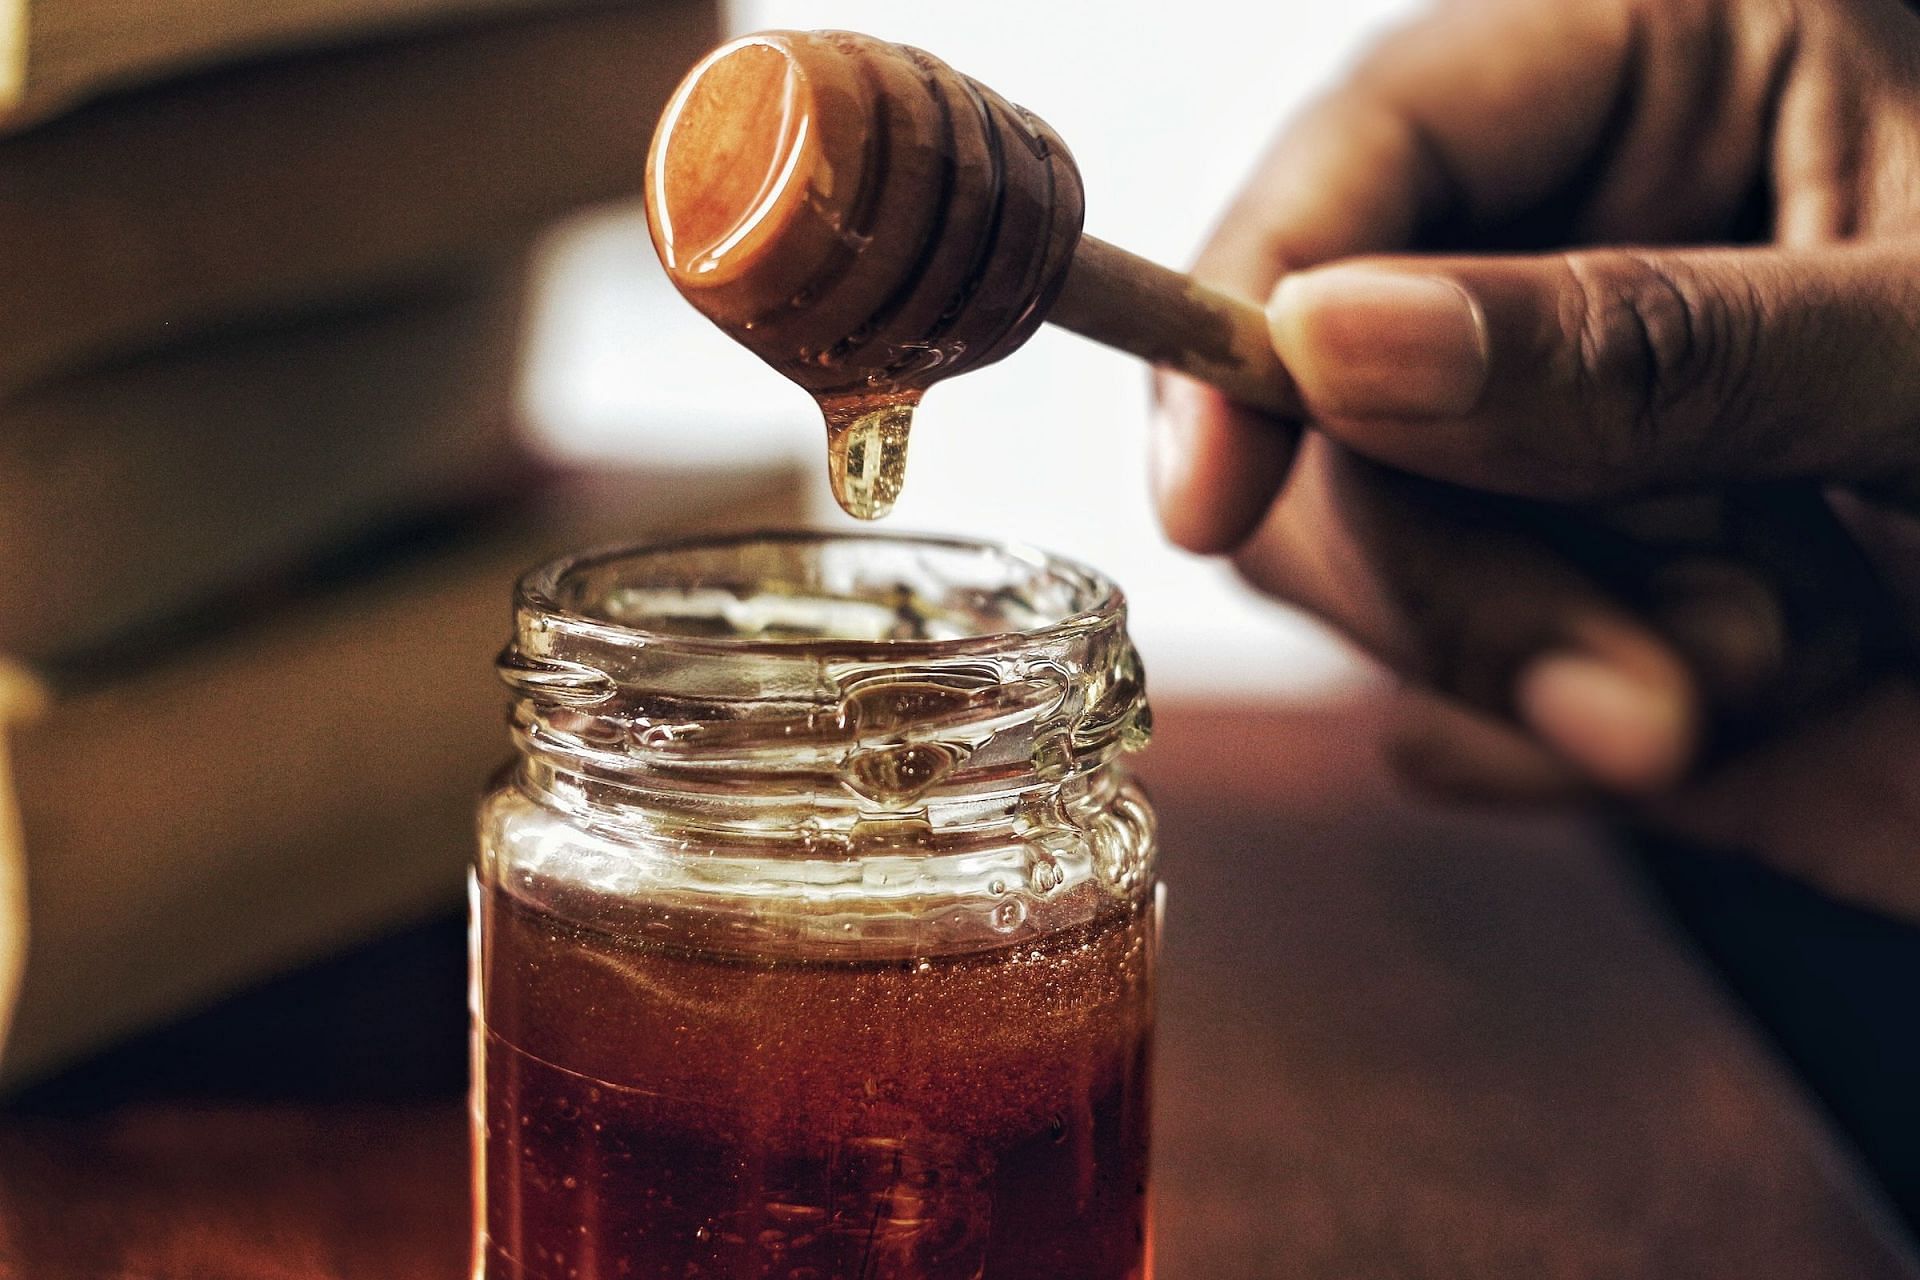 Honey is a good moisturizing agent. (Image via Unsplash/Arwin Neil Baichoo)